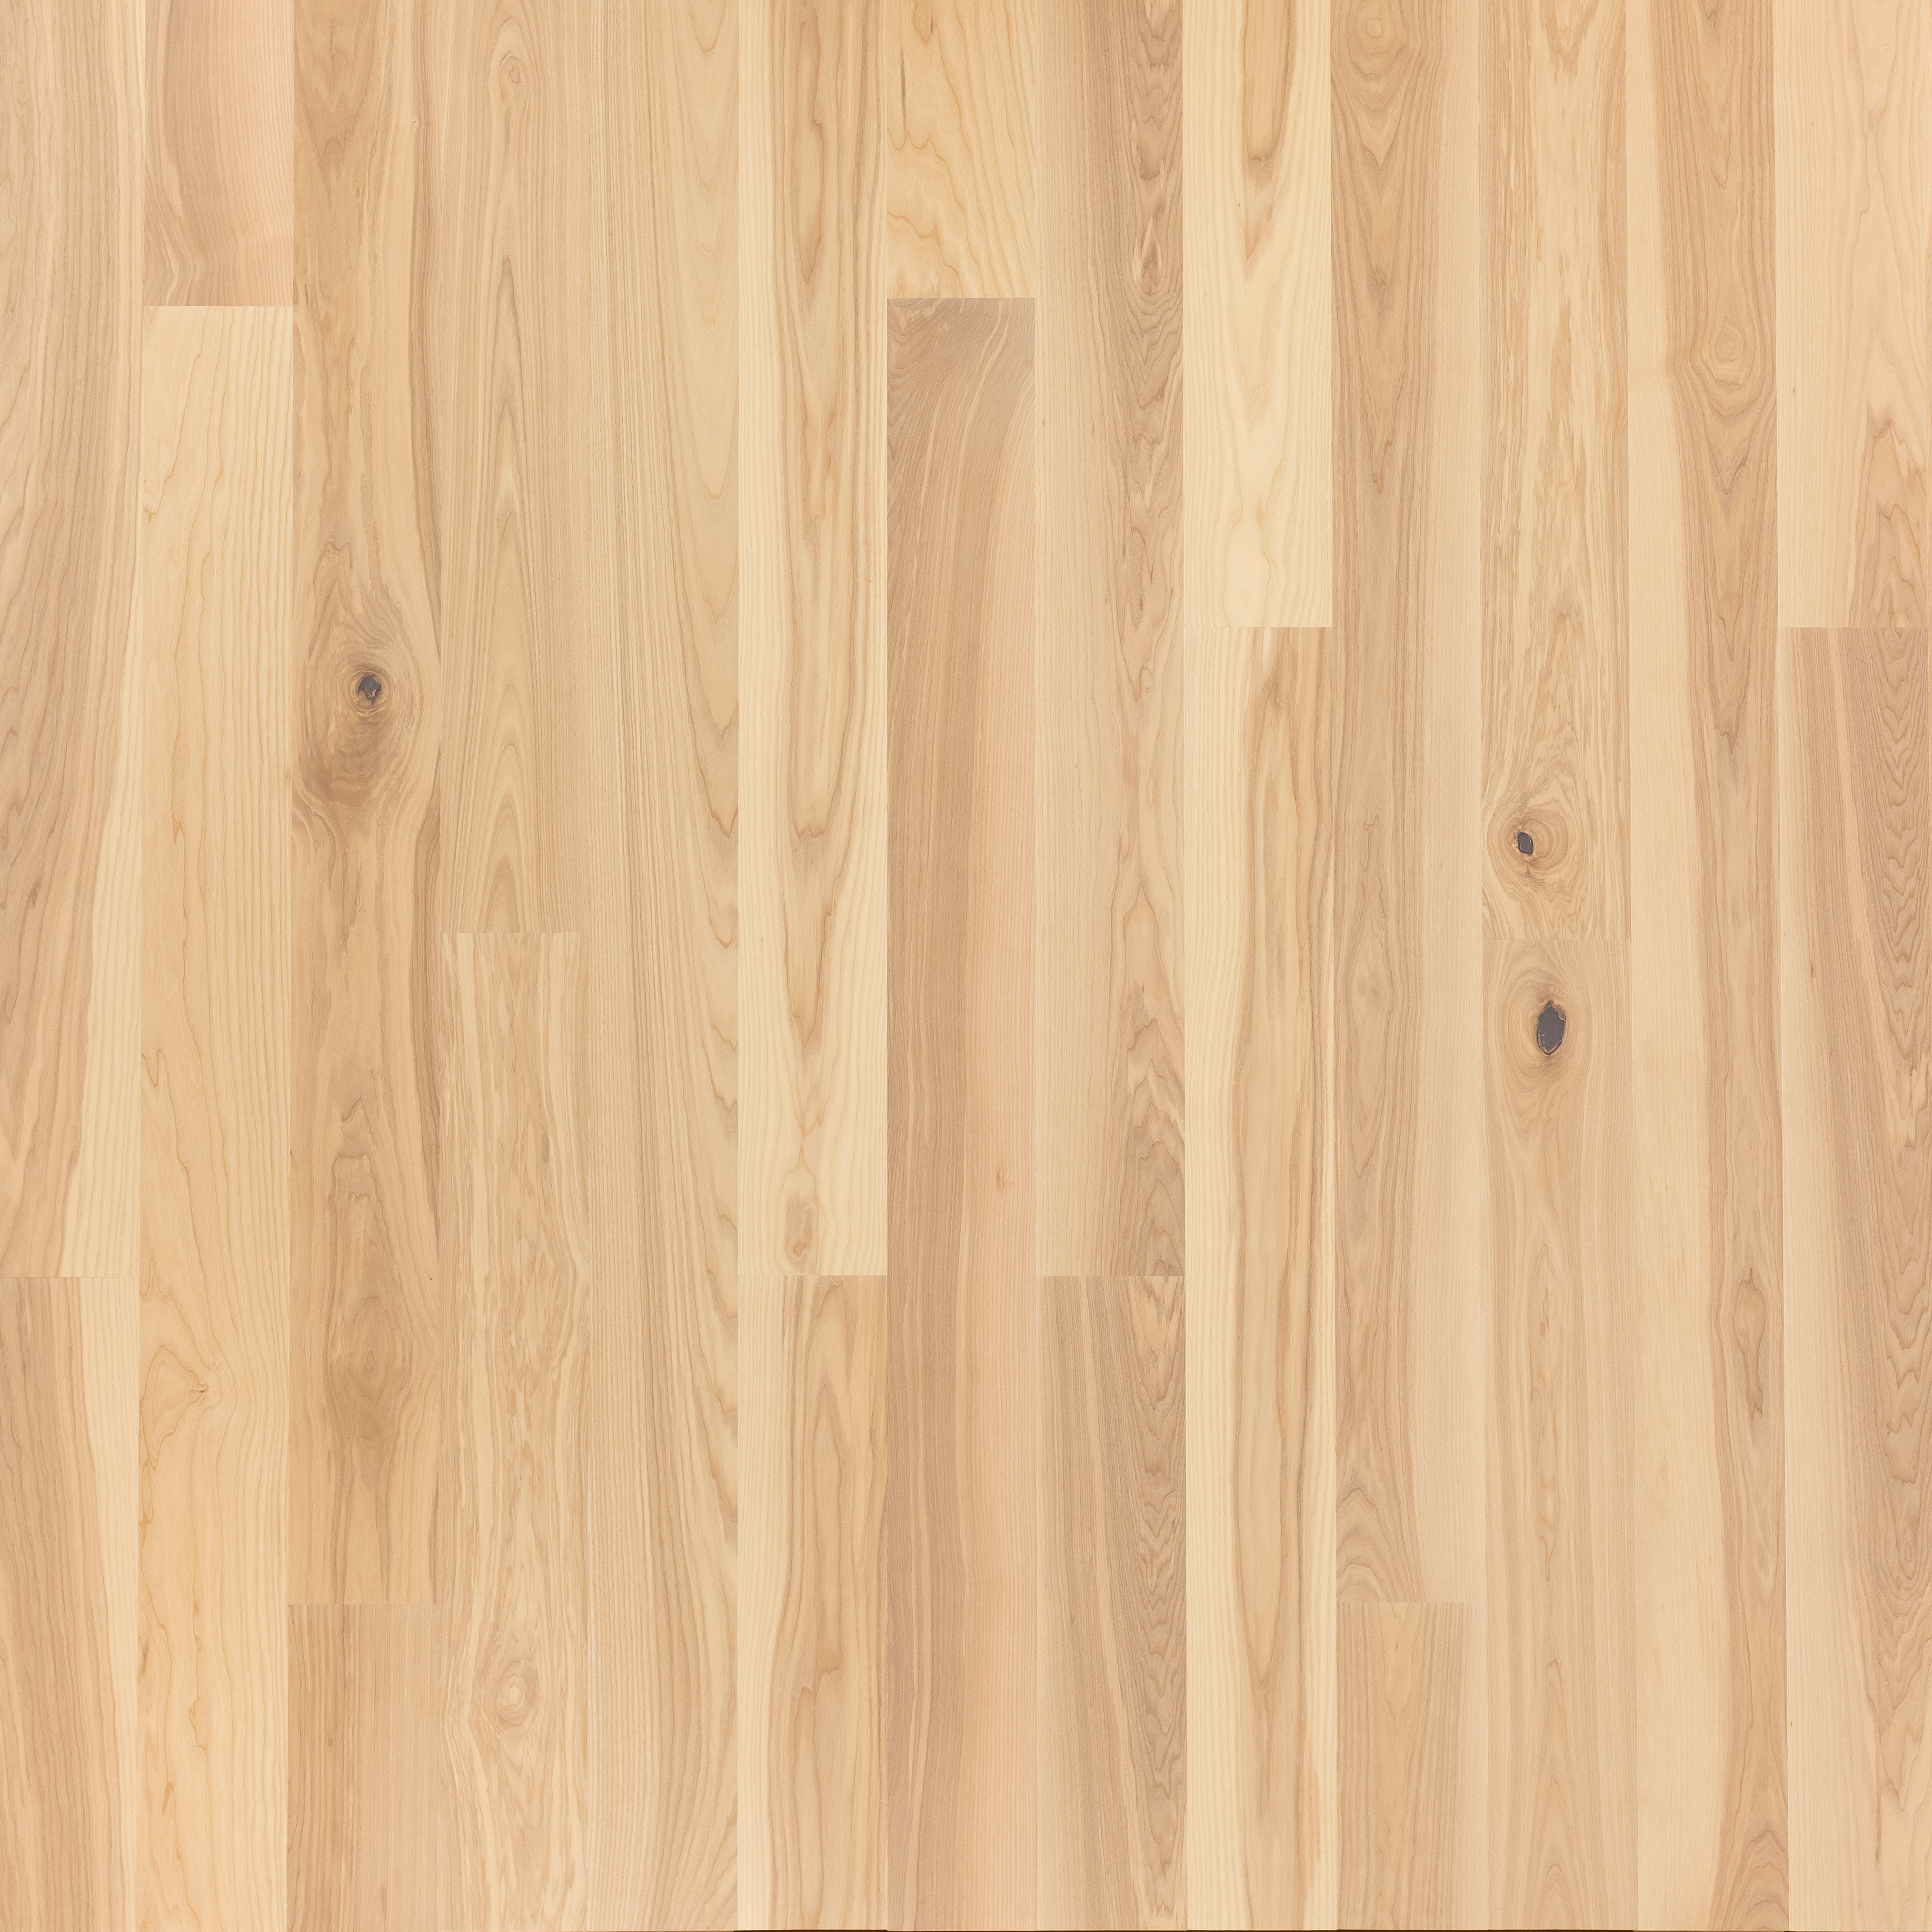 white wooden flooring texture